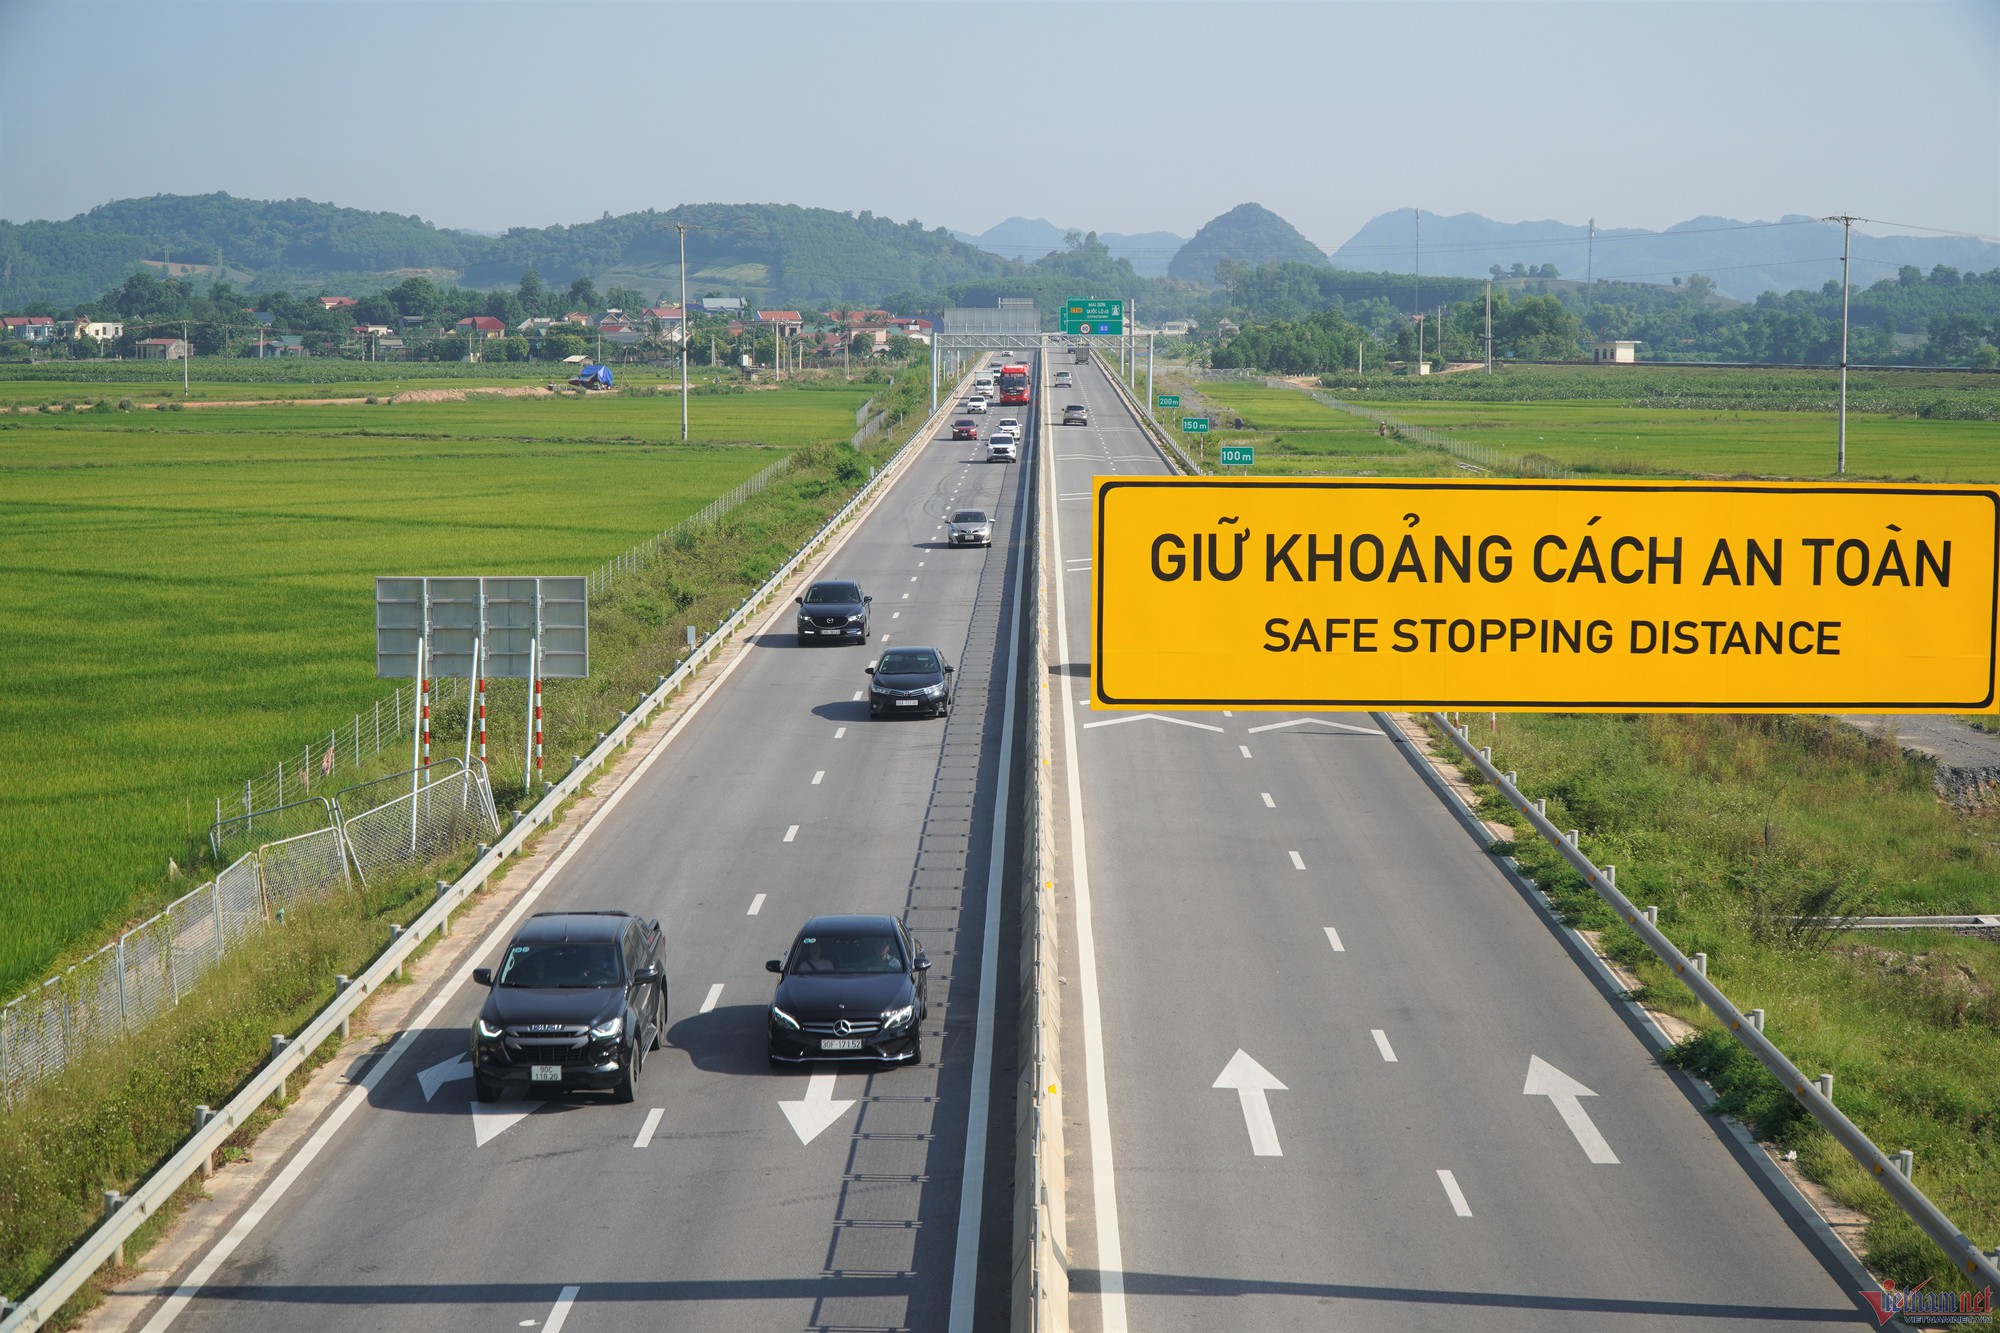 Thông xe cao tốc qua Thanh Hóa - Nghệ An: 'Xe bon nhanh, tài xế nào cũng vui' - Ảnh 2.